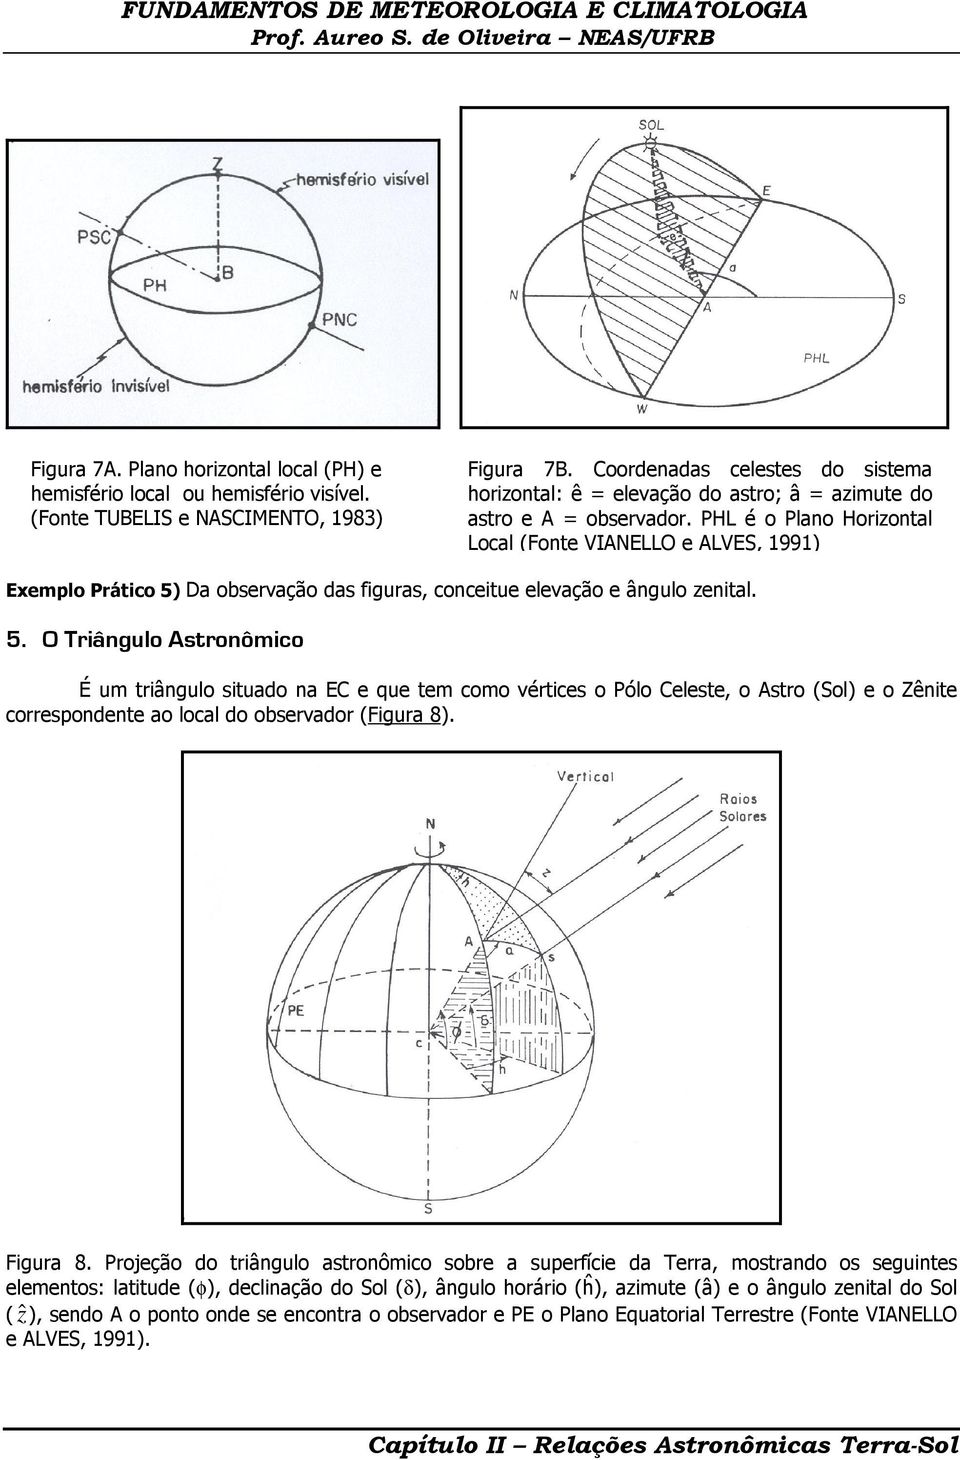 PHL é o Plano Horizontal Local (Fonte VIANELLO e ALVES, 1991) Exemplo Prático 5)